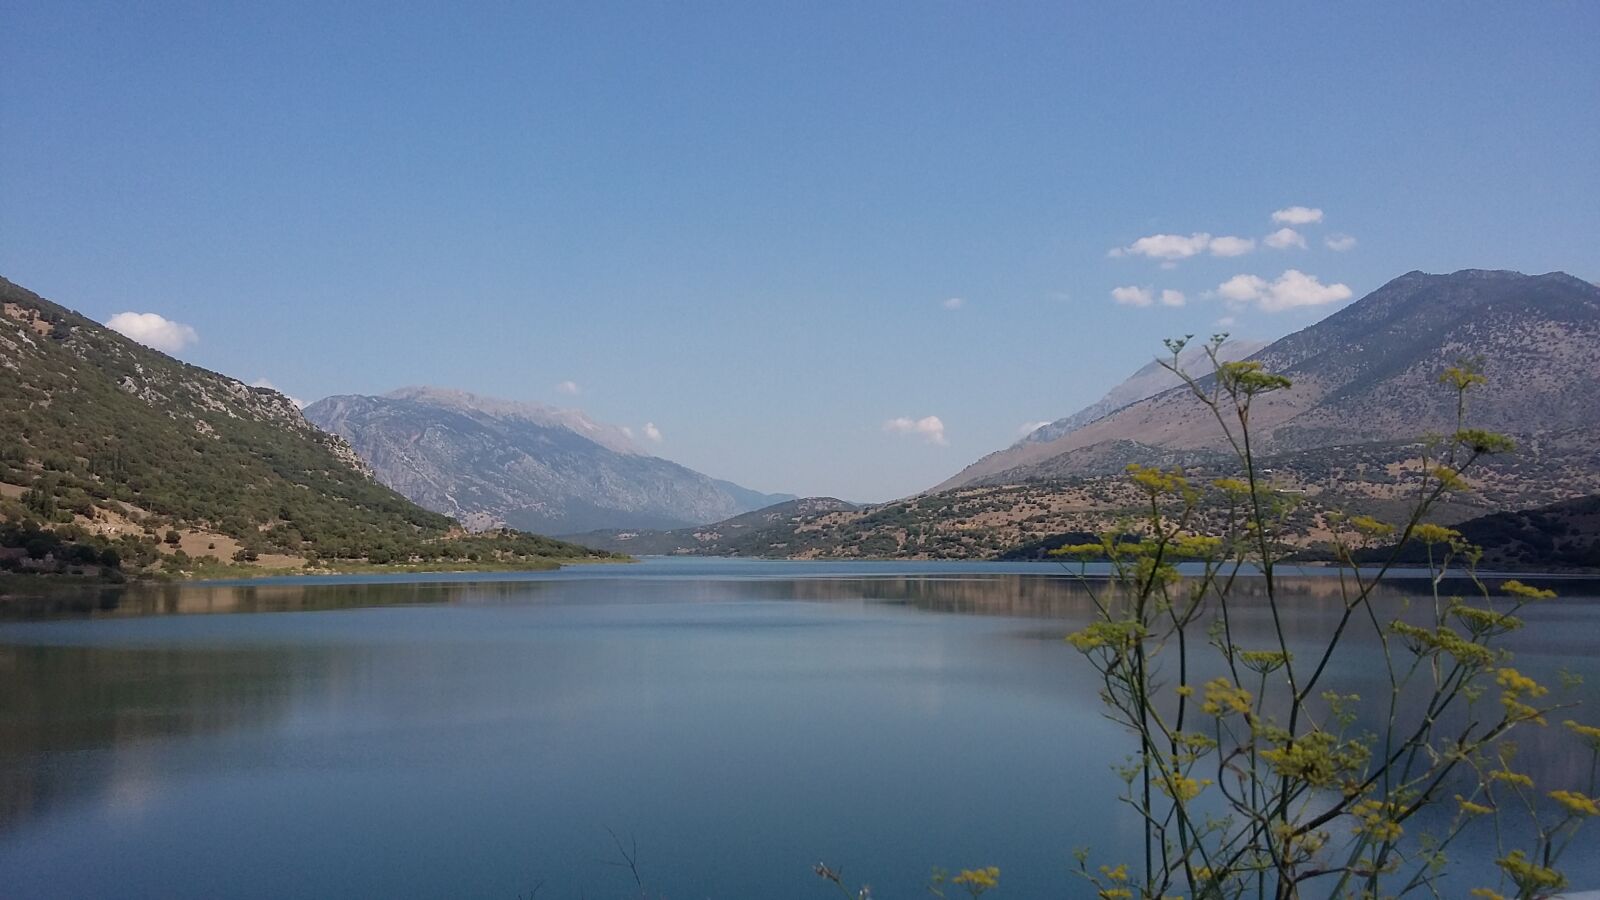 Samsung Galaxy A3 sample photo. Greece, mornos, lake photography